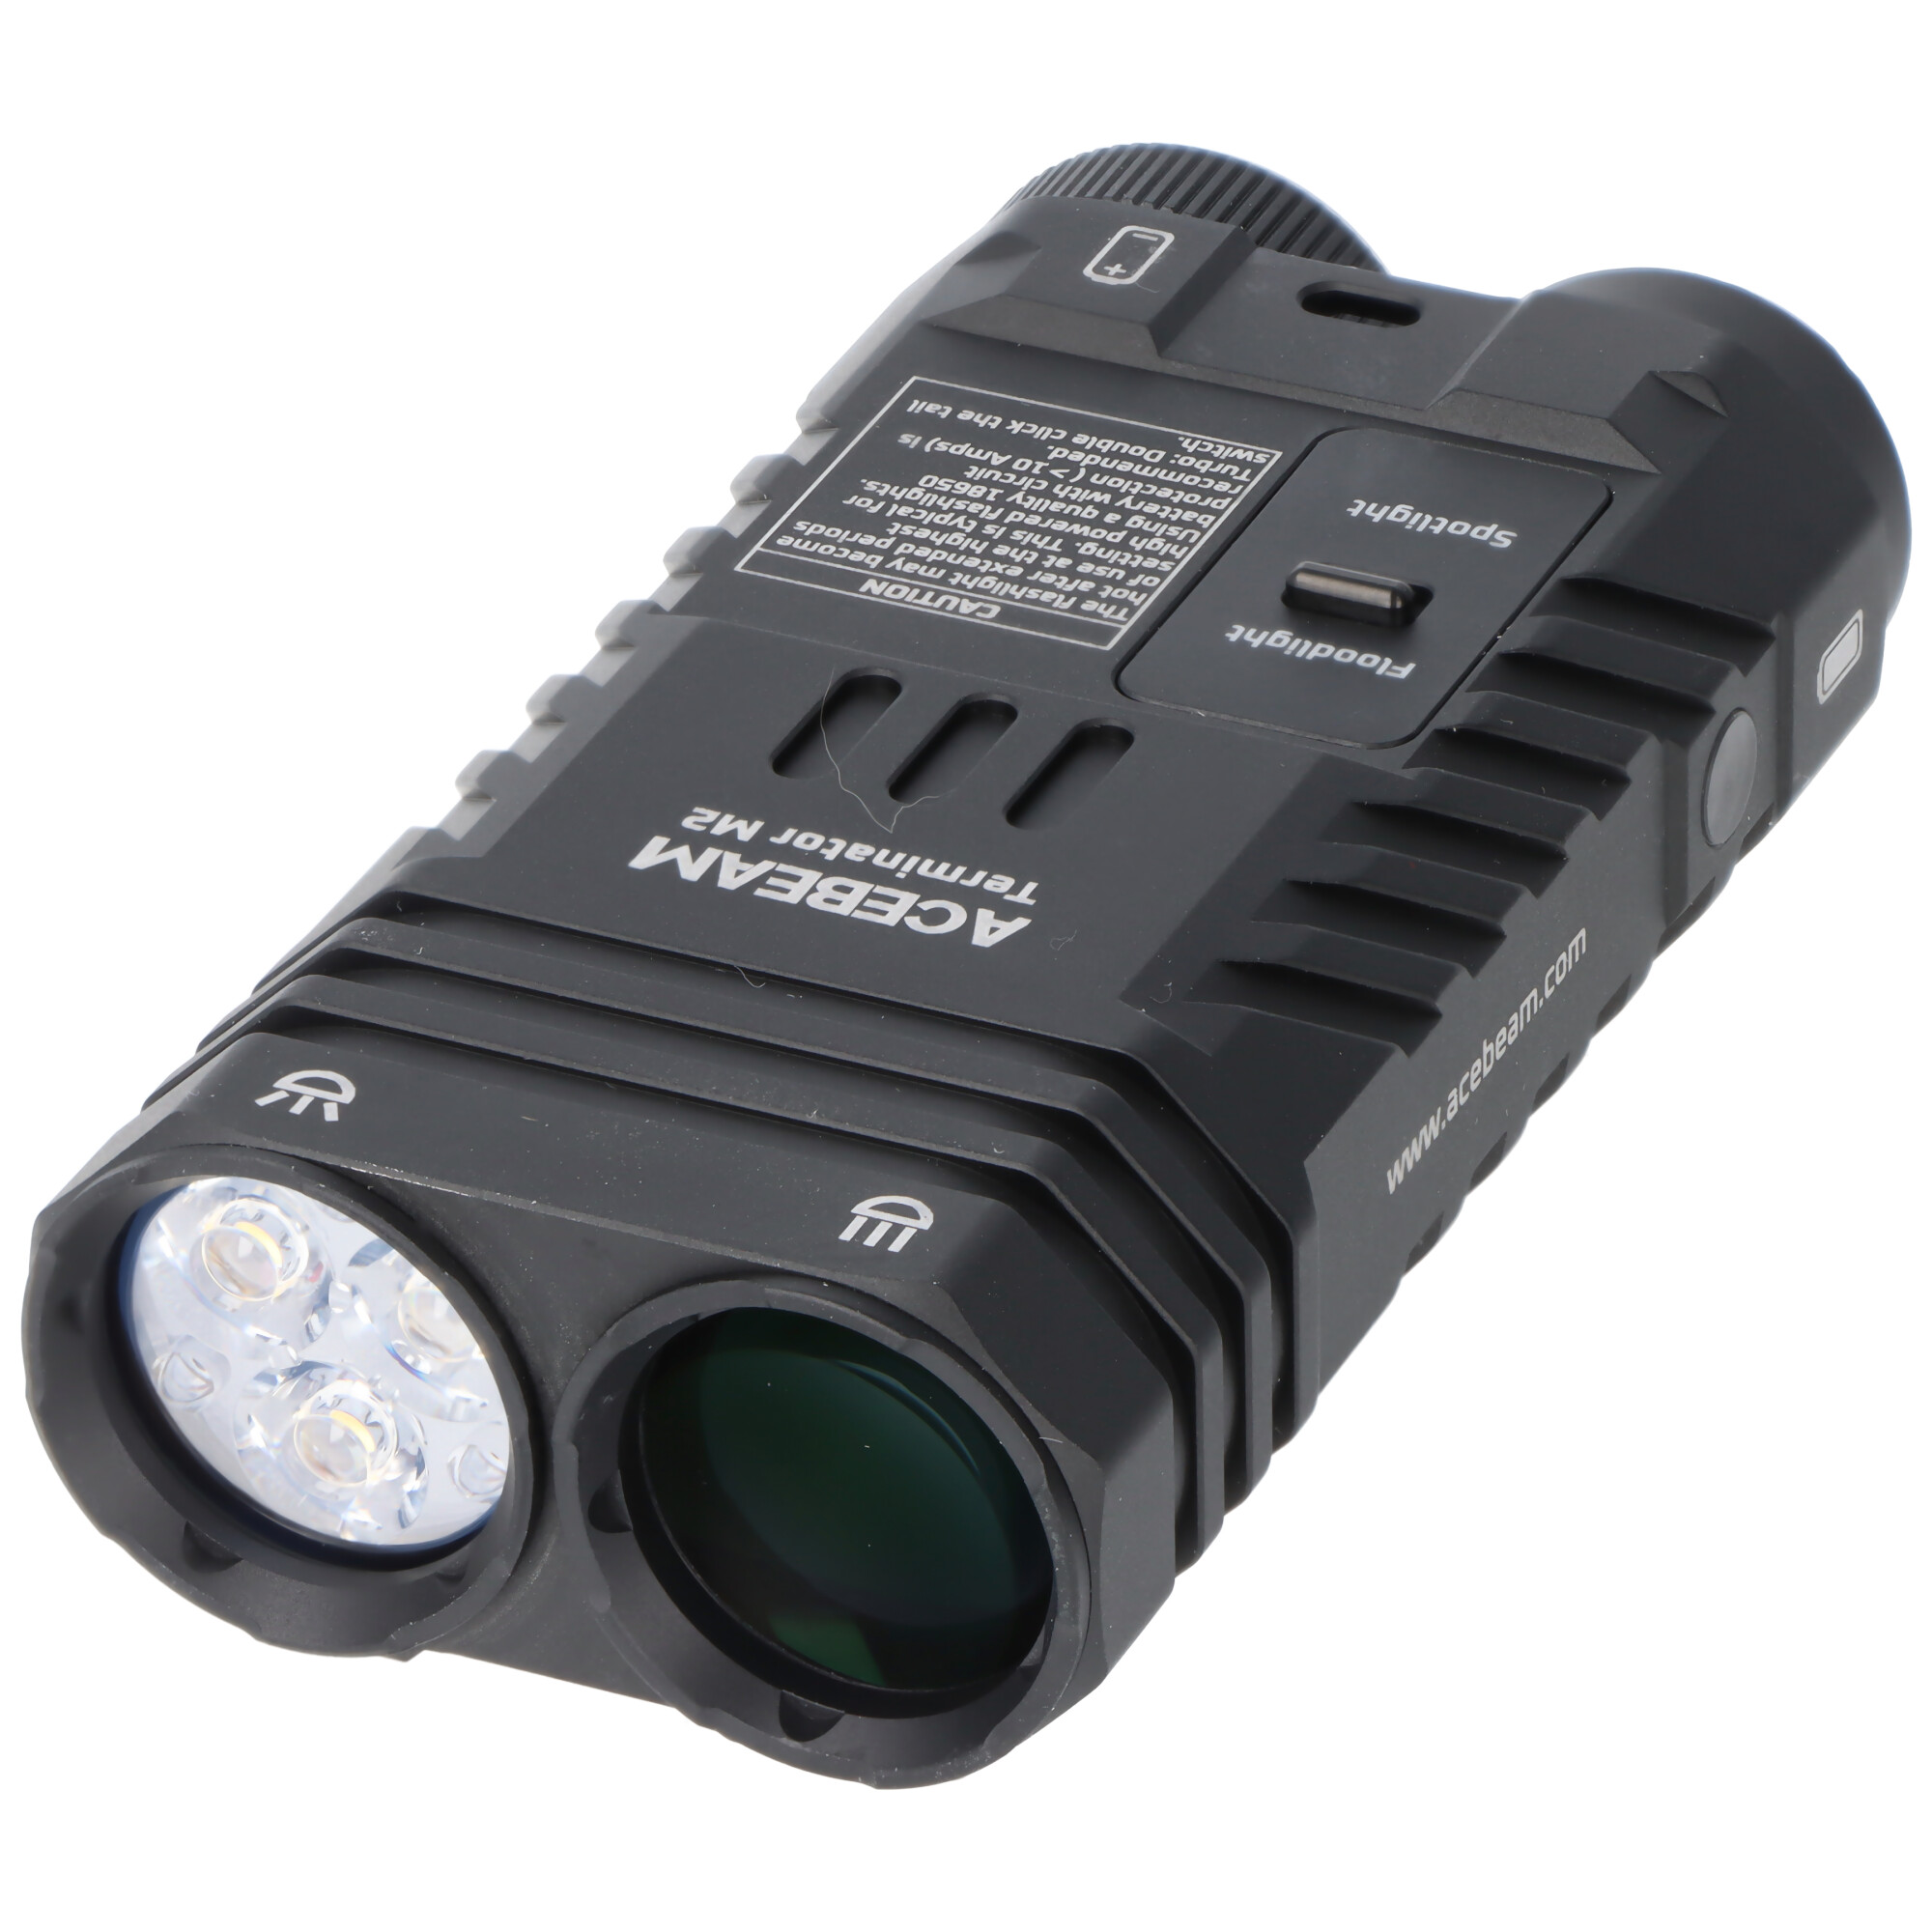 AceBeam Terminator M2 LED-Taschenlampe mit 2.000 Lumen, mit Spot-, Flut-, und AUX-Licht, schwarz